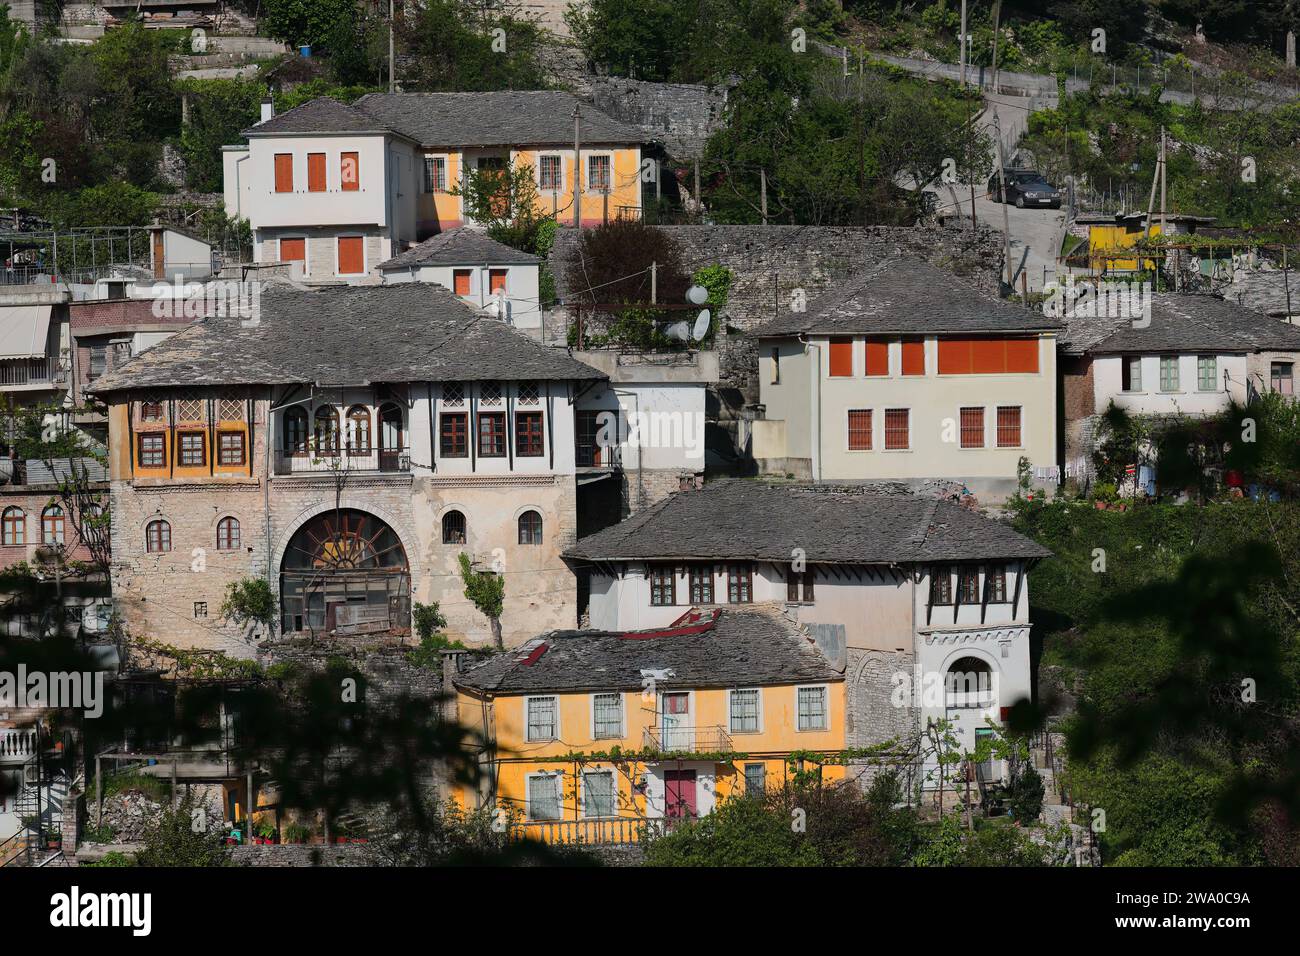 193 abitazioni in stile ottomano in pietra sul pendio giù per la collina di fronte alla cittadella da sud-ovest. Gjirokaster-Albania. Foto Stock